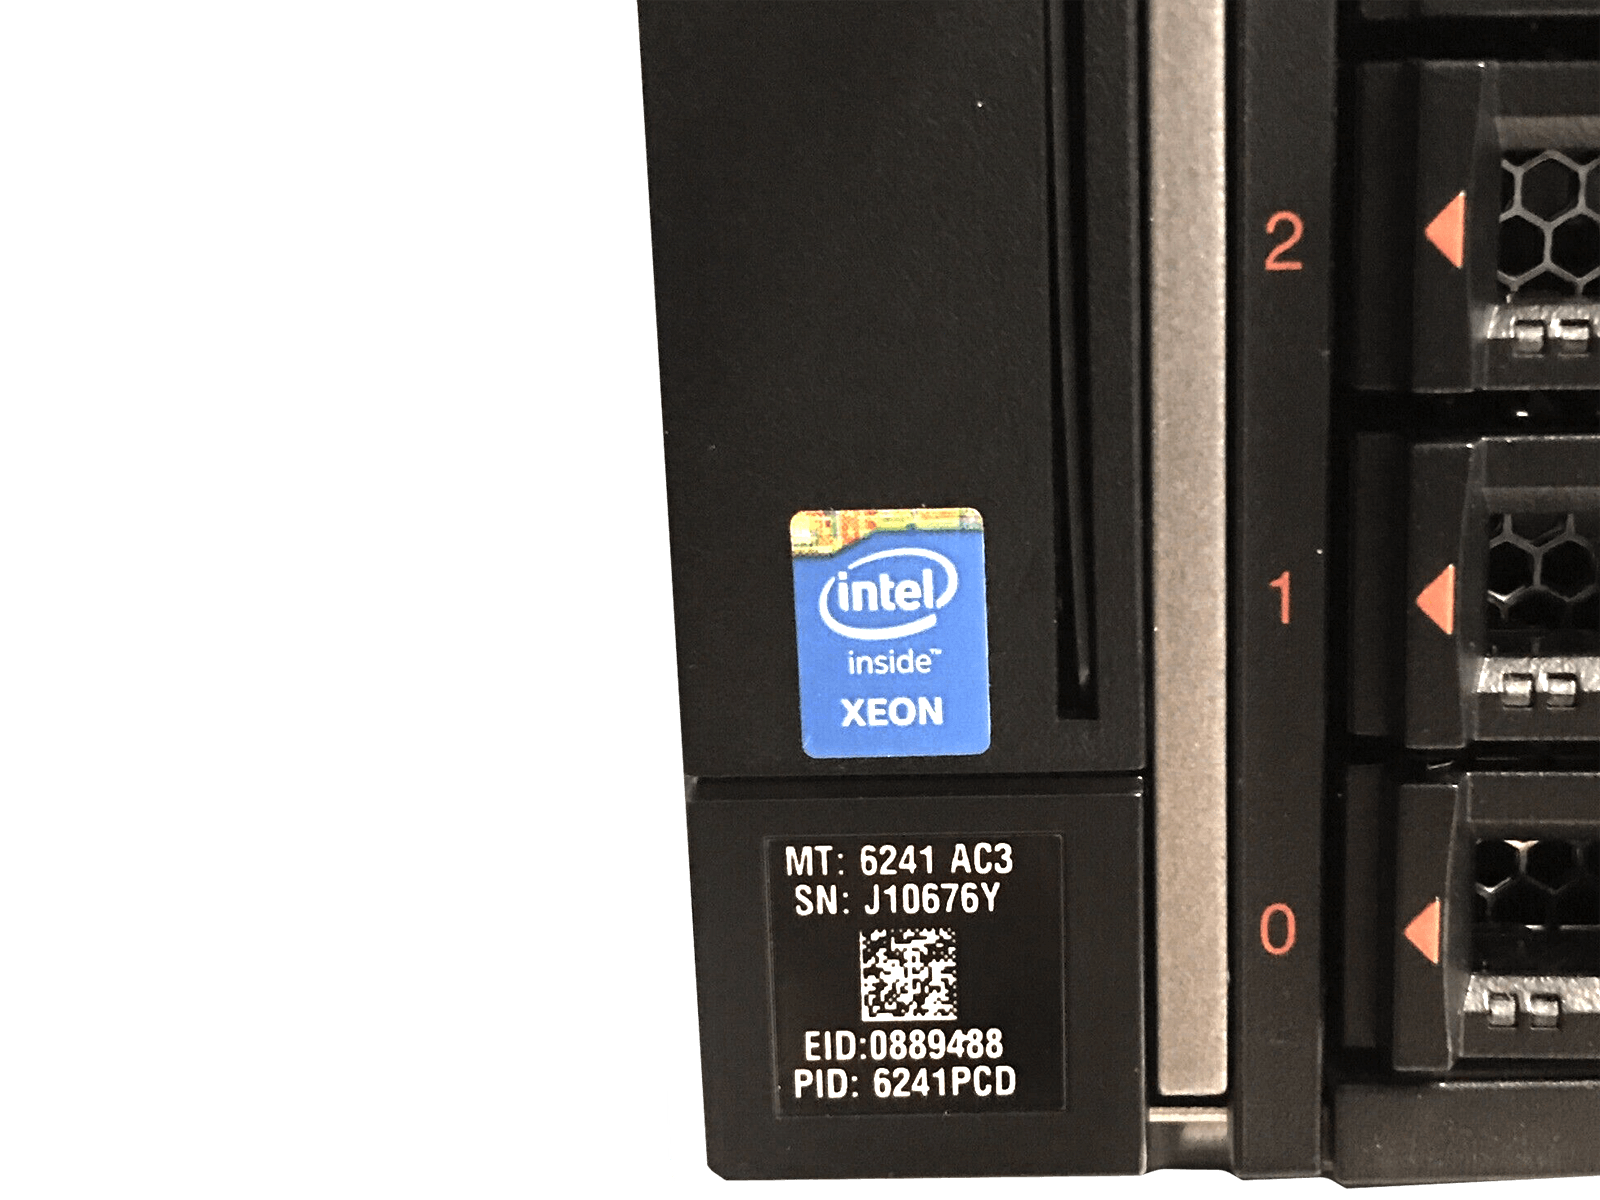 IBM x3850 X6 Server 4x Xeon E7-8893 v3 1024GB DDR4 RAM 3x 300GB 15K 4x 1400W PSU